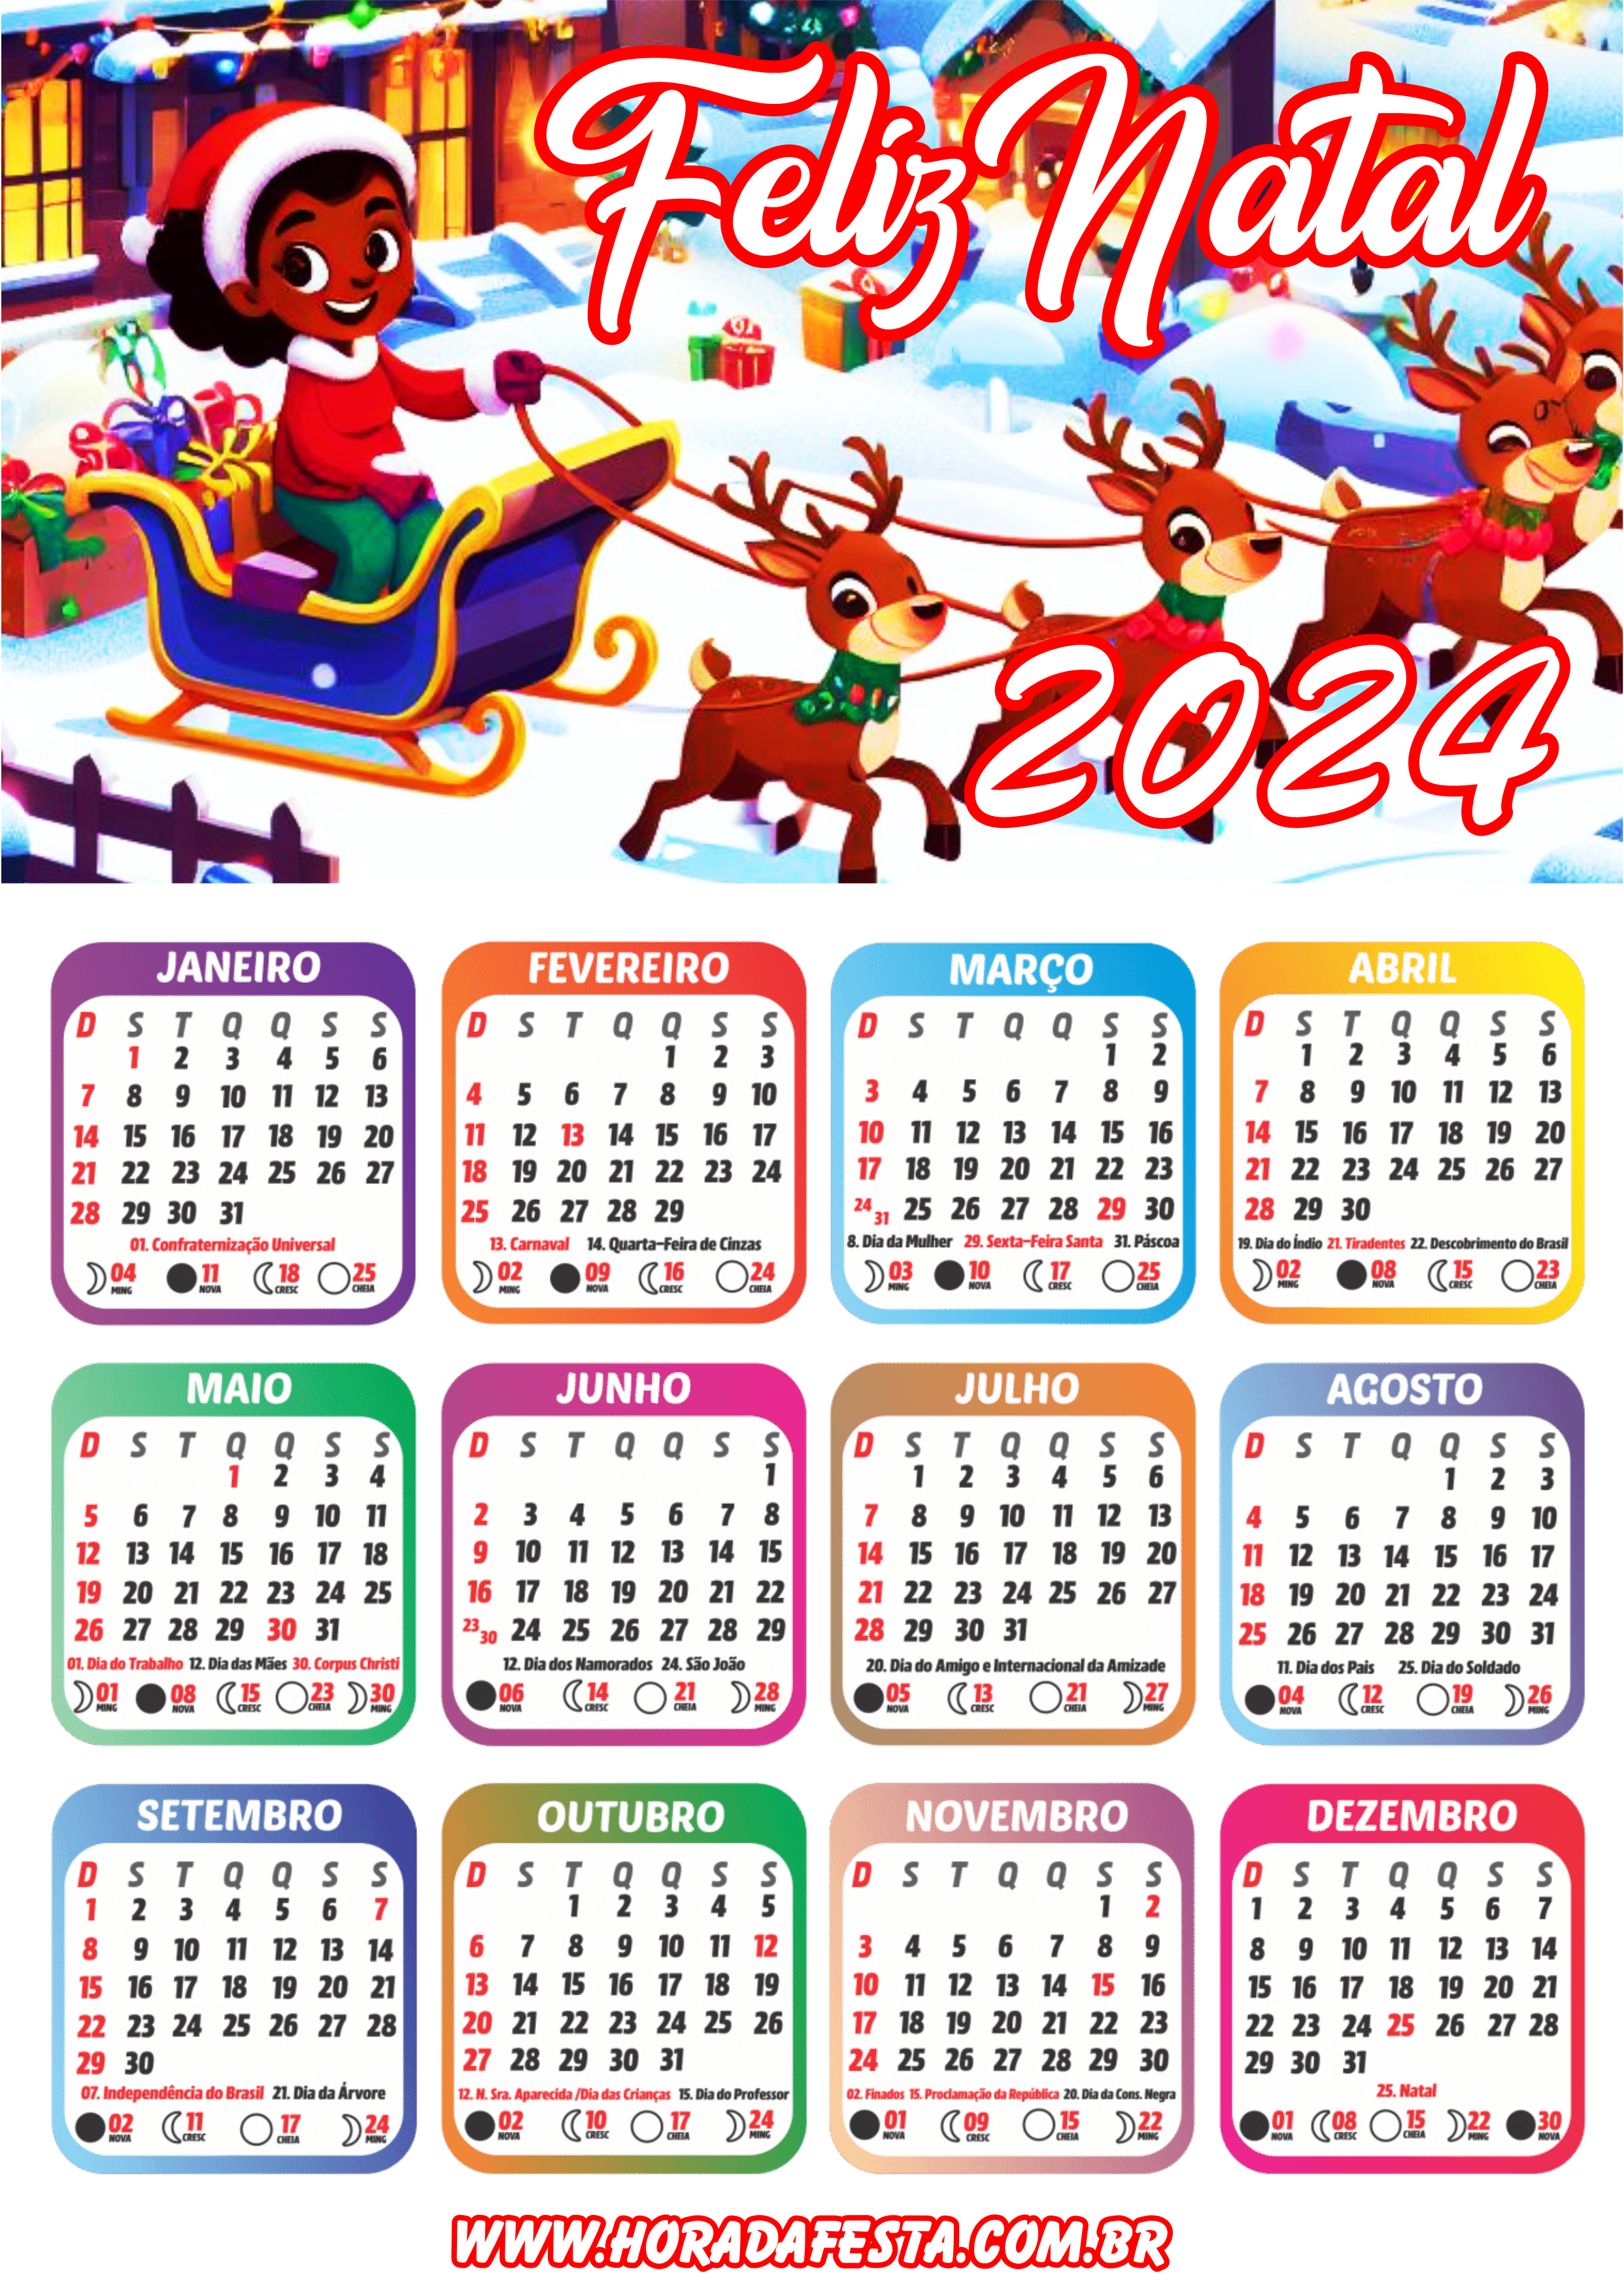 Feliz natal noite feliz calendário 2024 artigos de papelaria renda extra com personalizados artes gráficas menina png